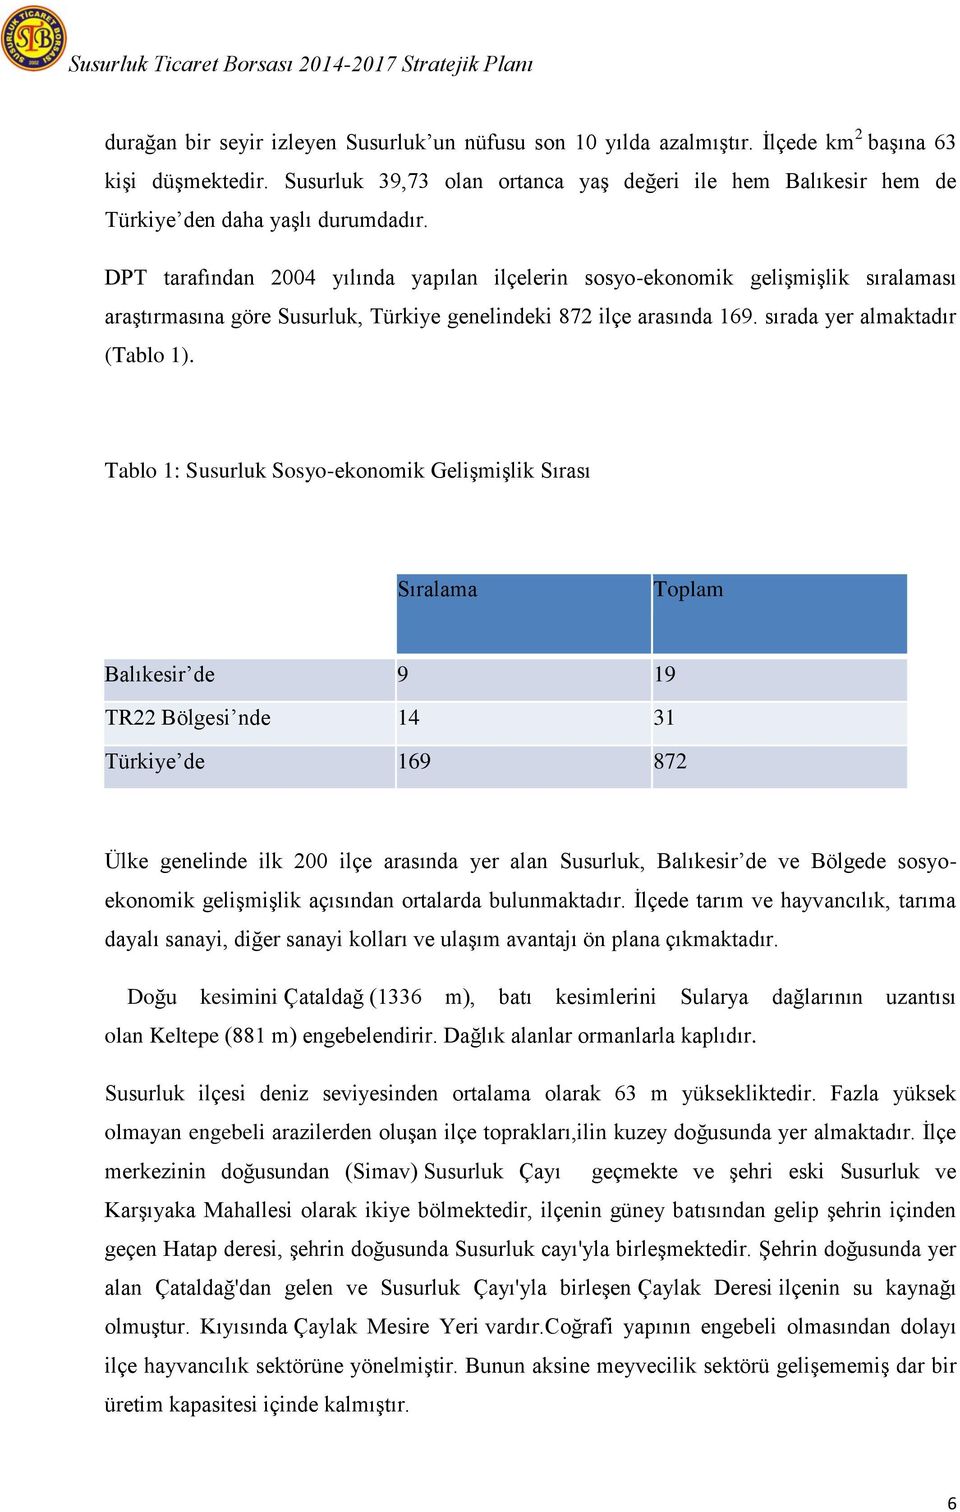 DPT tarafından 2004 yılında yapılan ilçelerin sosyo-ekonomik geliģmiģlik sıralaması araģtırmasına göre Susurluk, Türkiye genelindeki 872 ilçe arasında 169. sırada yer almaktadır (Tablo 1).